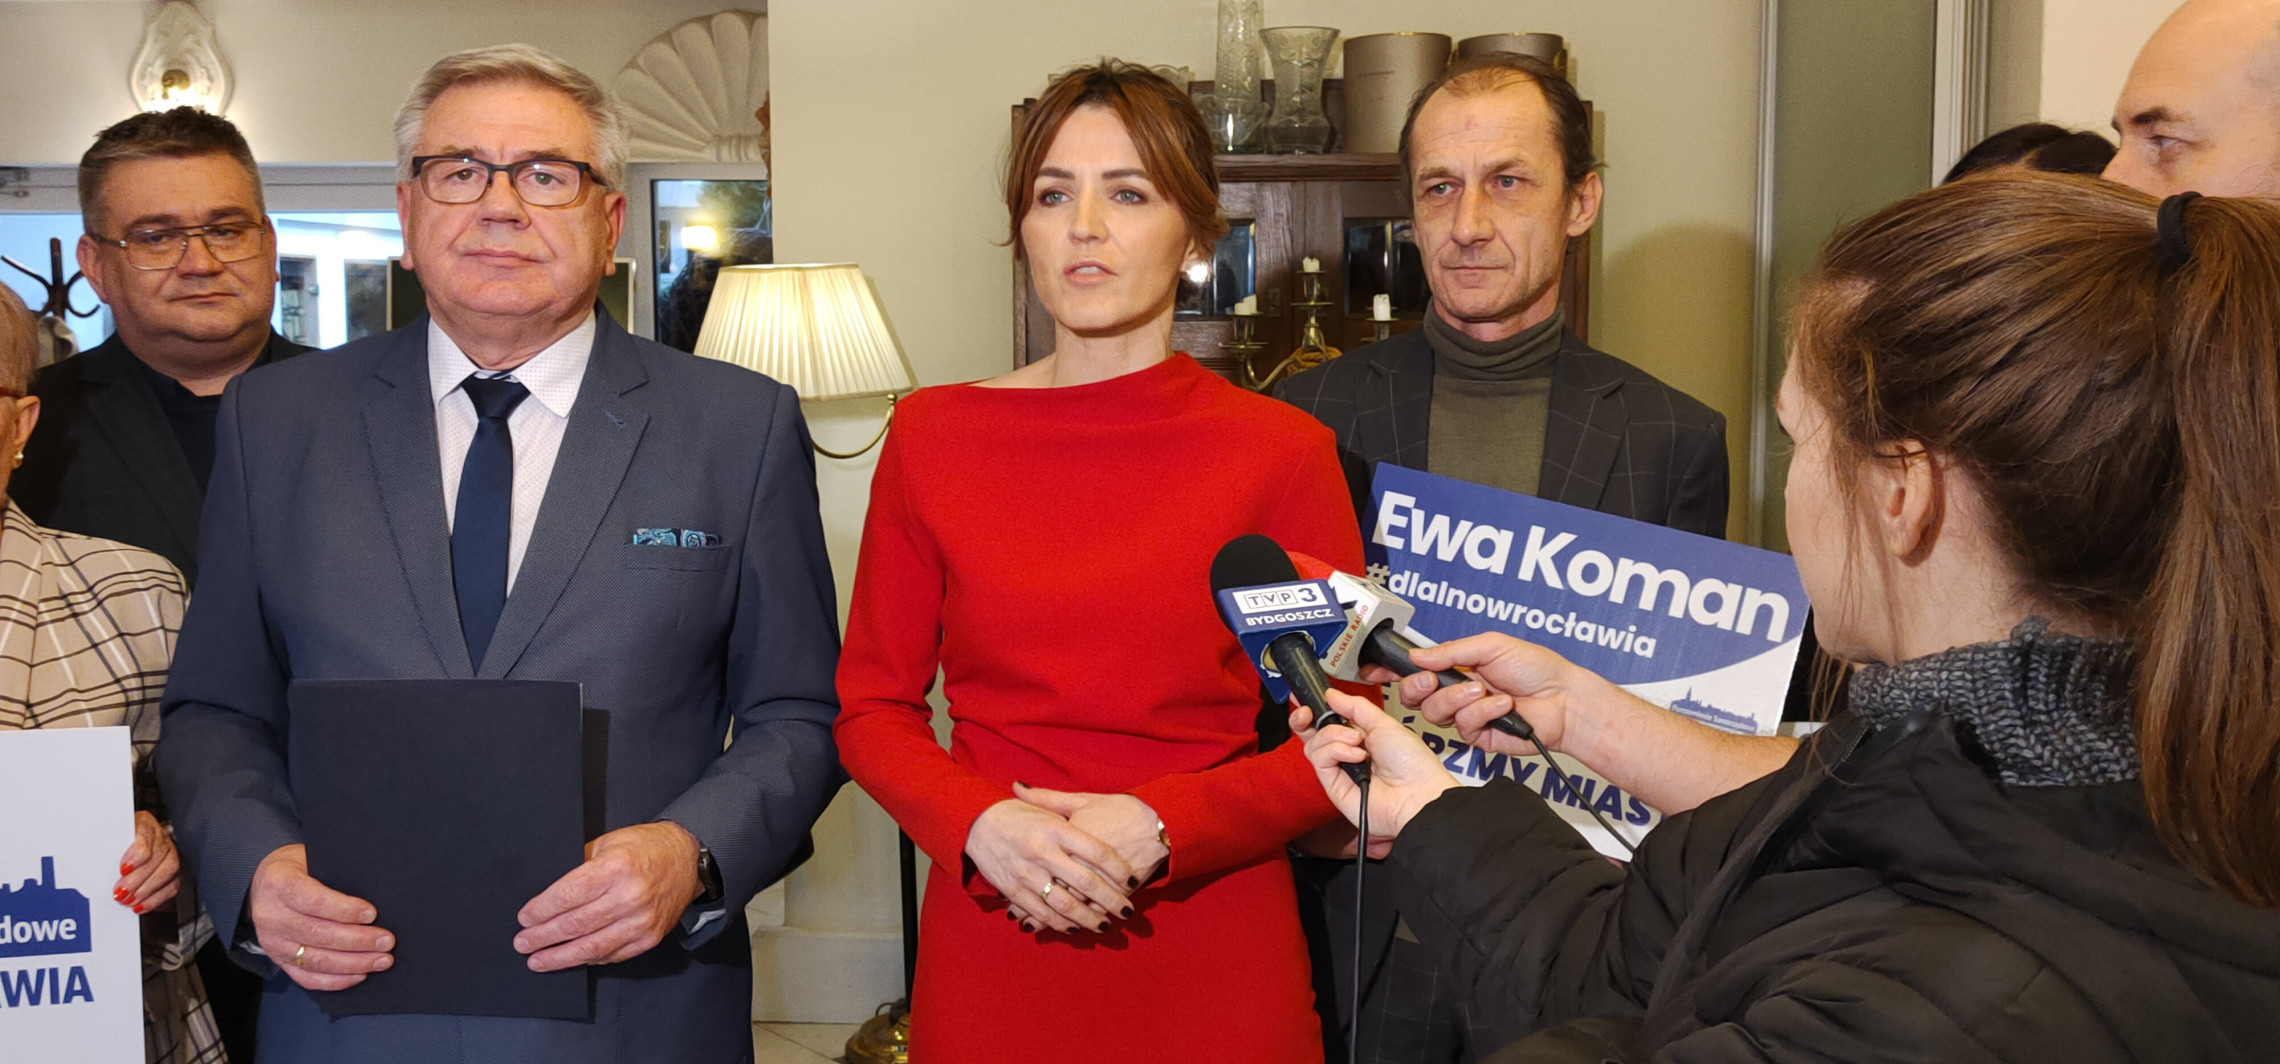 Inowrocław - Ewa Koman rezygnuje, ale nie z kandydowania. "Chcę wyprosić politykę z naszego miasta"